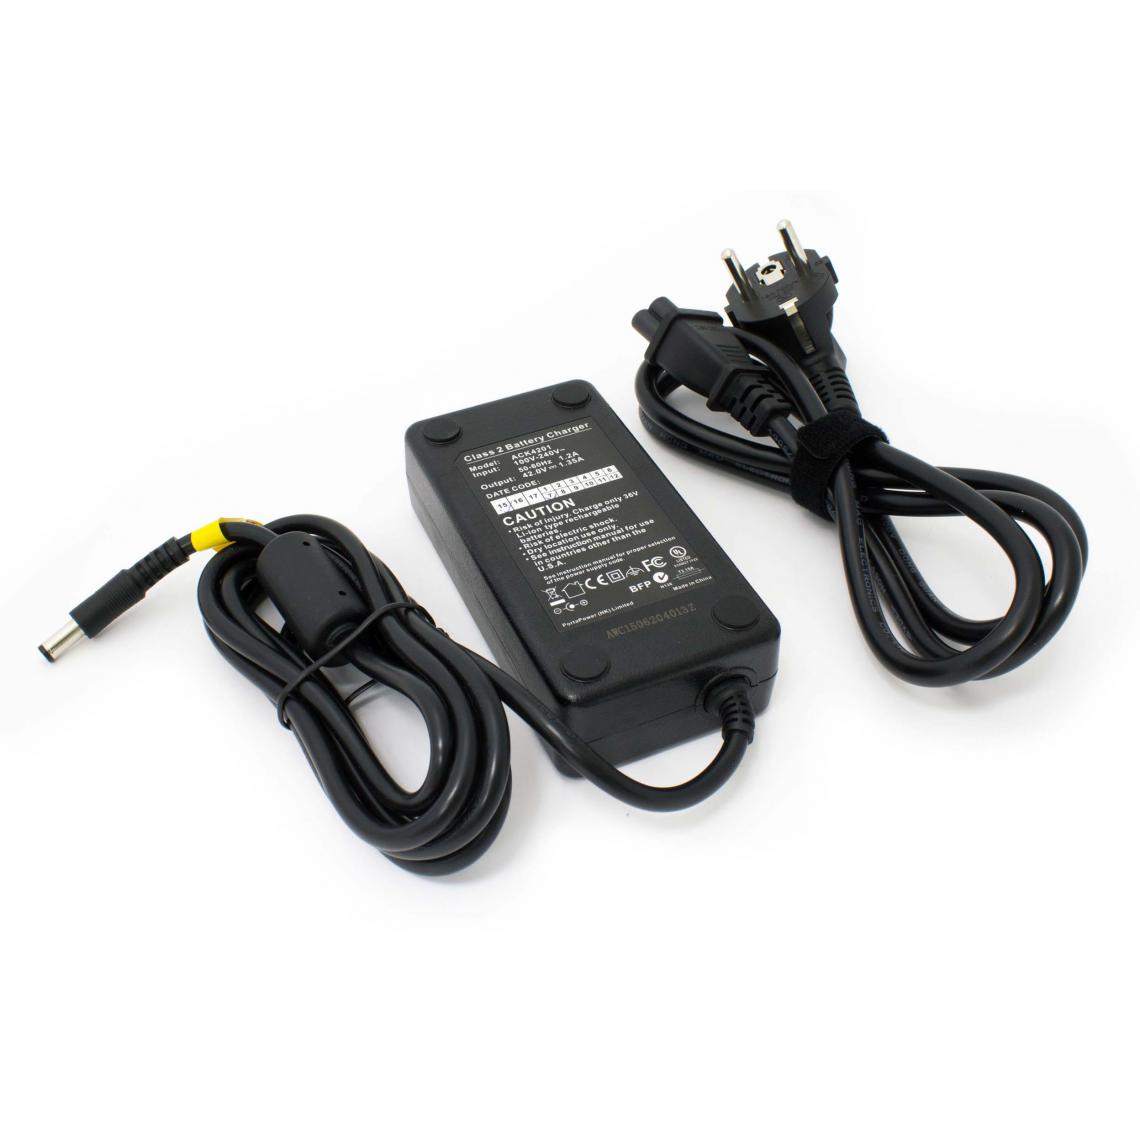 Vhbw - vhbw chargeur compatible avec Curtis Phylion vélos électriques, E-bike - Pour batteries Li-ion de 36 V, avec connexion par prise ronde - Accessoires Mobilité électrique